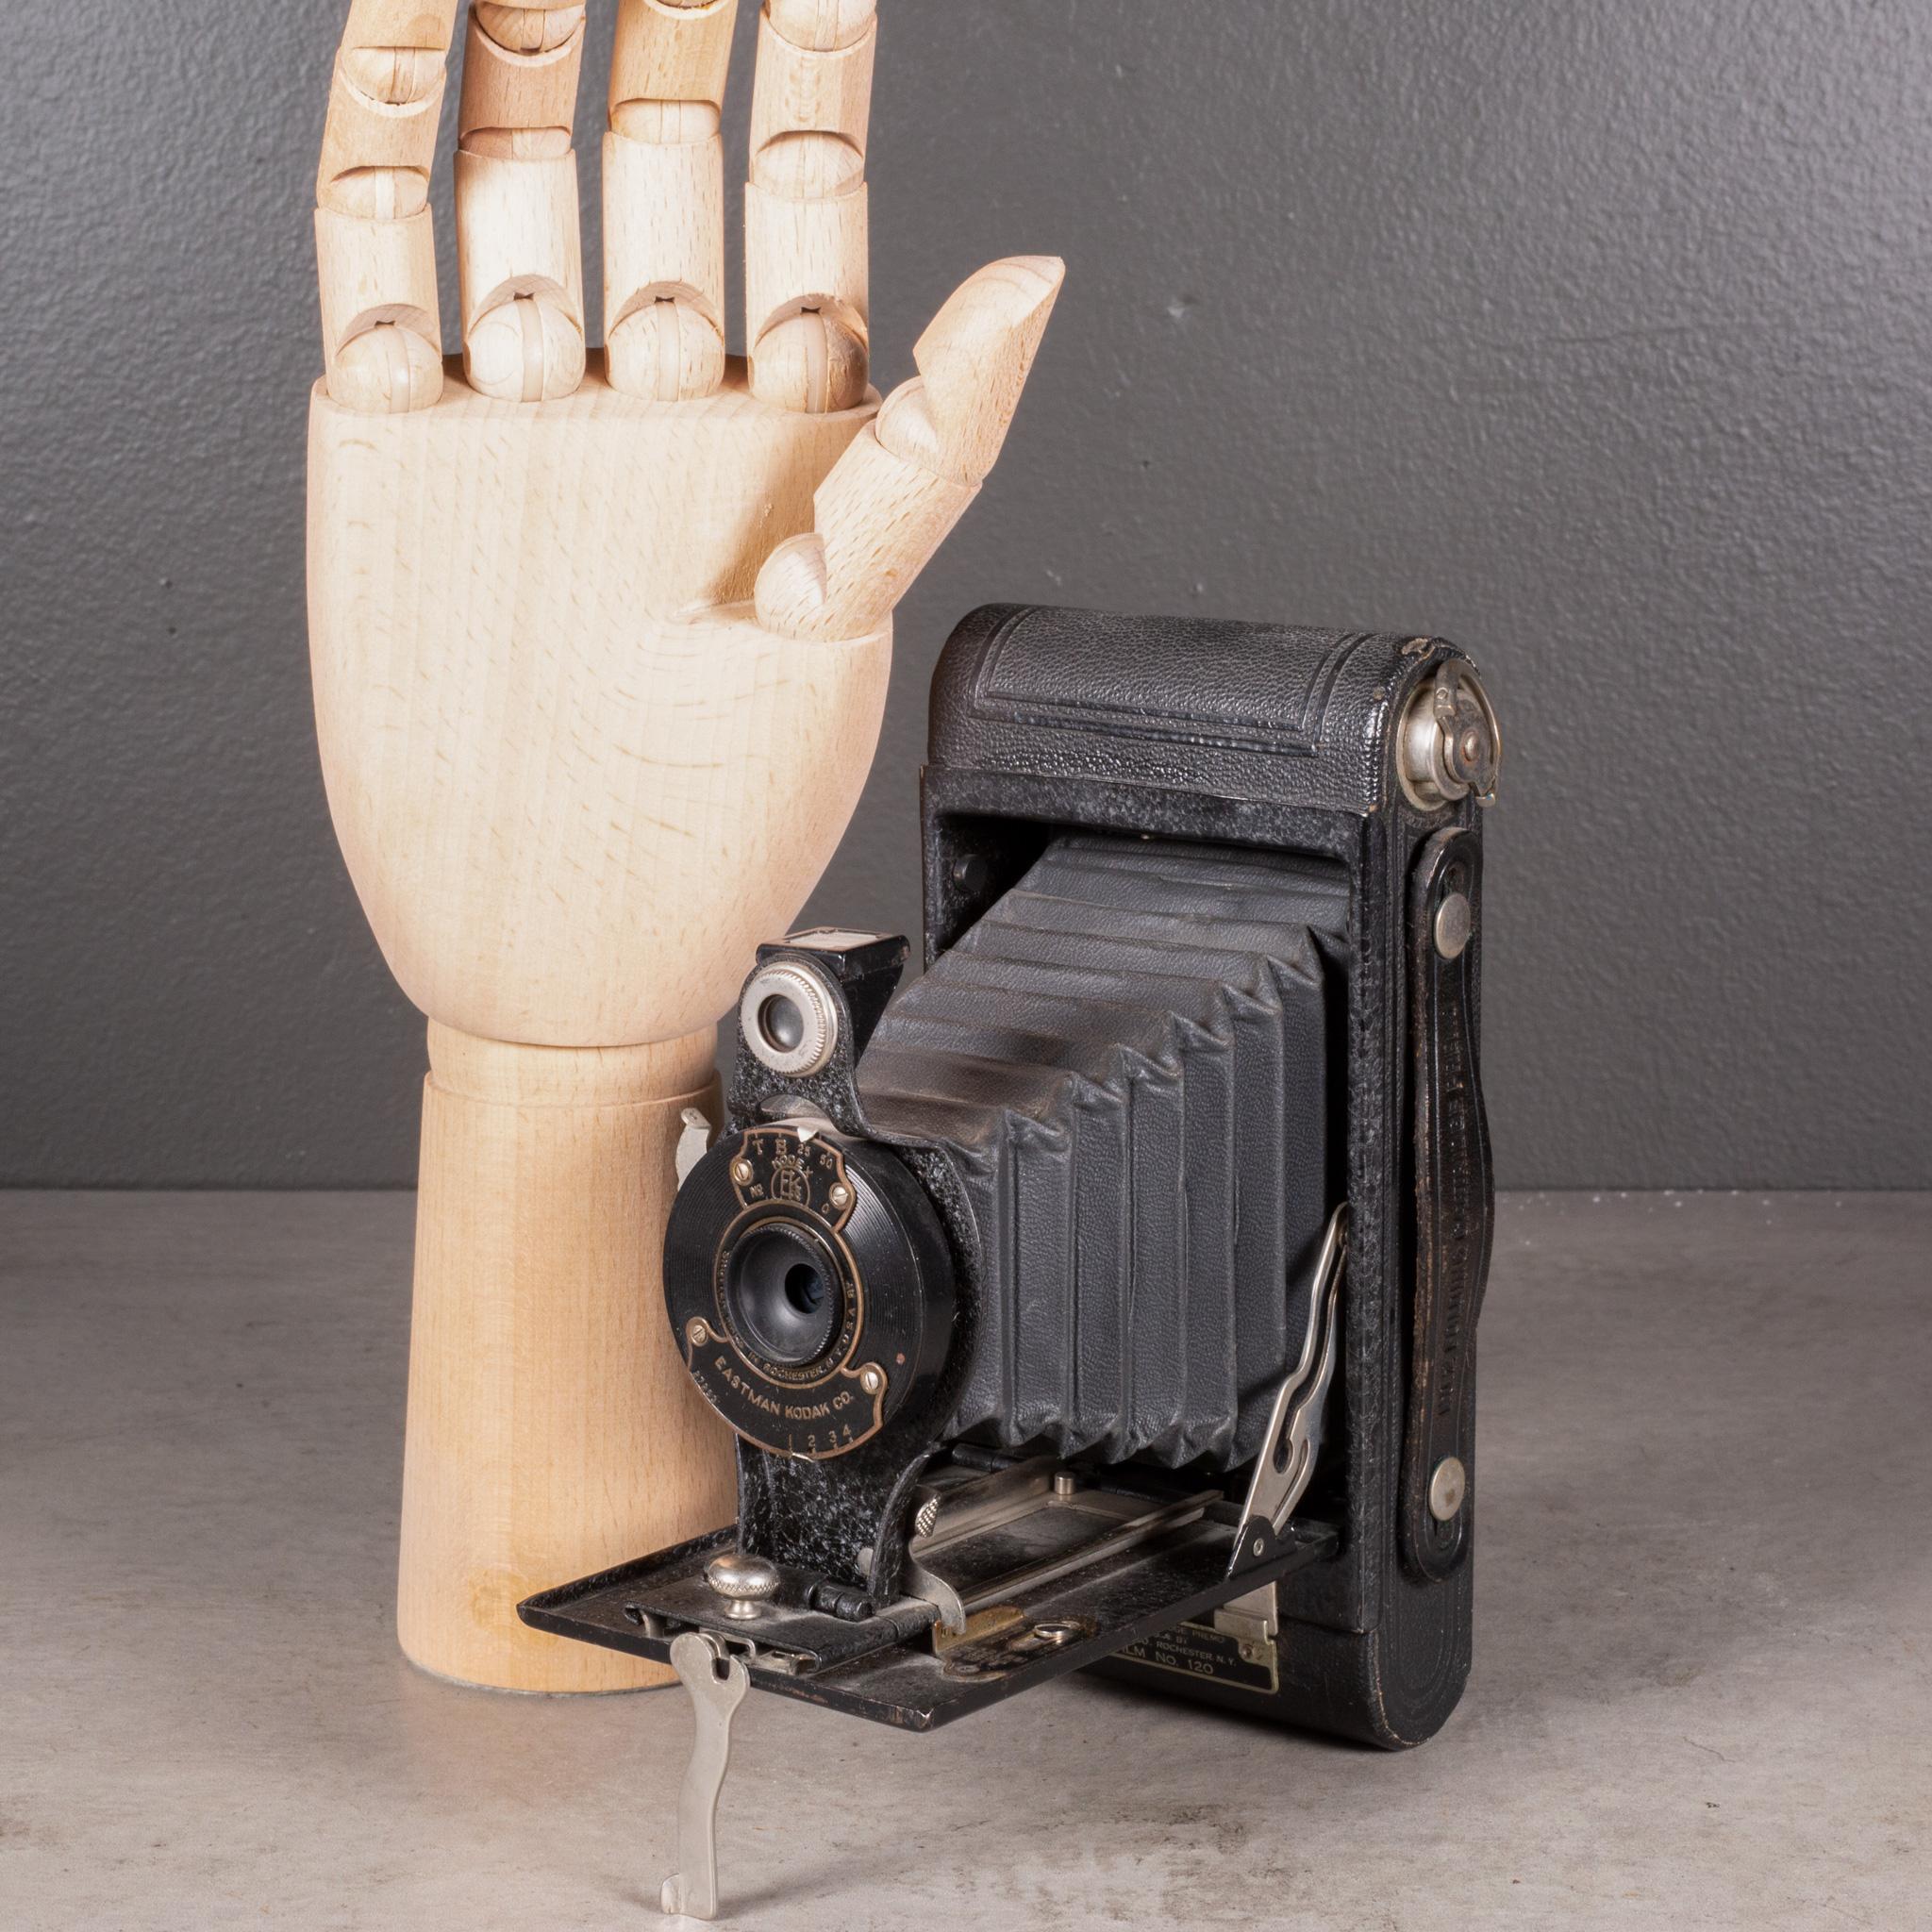 À PROPOS DE  

Appareil photo pliant Eastman Kodak n° 2 d'origine. Le boîtier de l'appareil photo est entièrement en cuir et se replie en douceur pour atteindre 1,5 pouce. Cet appareil a conservé sa finition d'origine et présente un degré d'usure